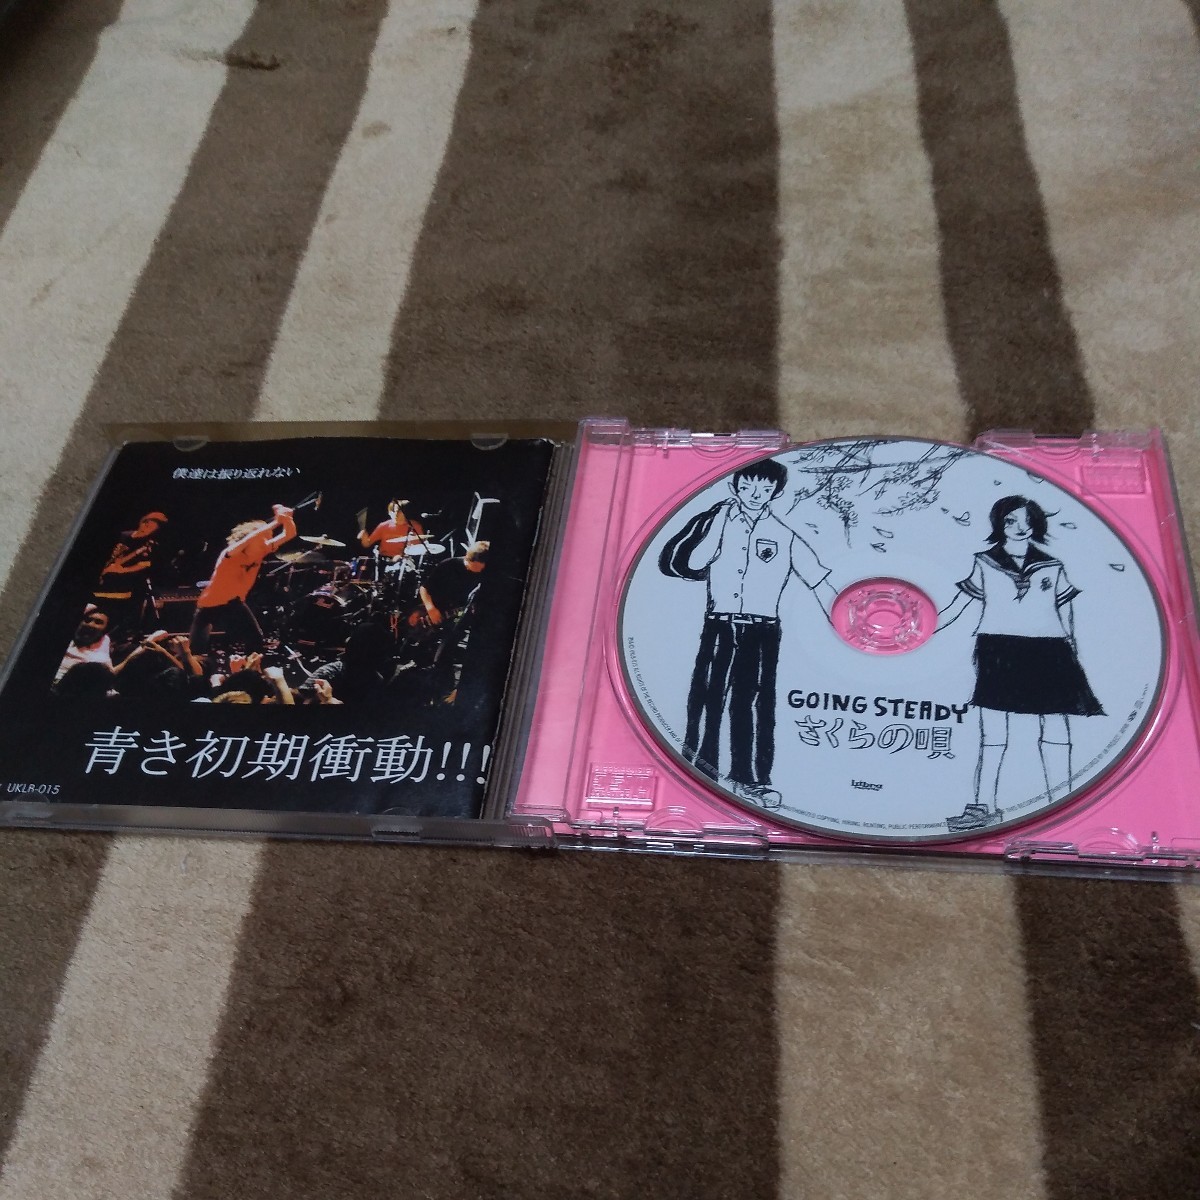 GOING STEADY「さくらの唄」ゴイステ 峯田和伸 銀杏BOYZ CDの画像3